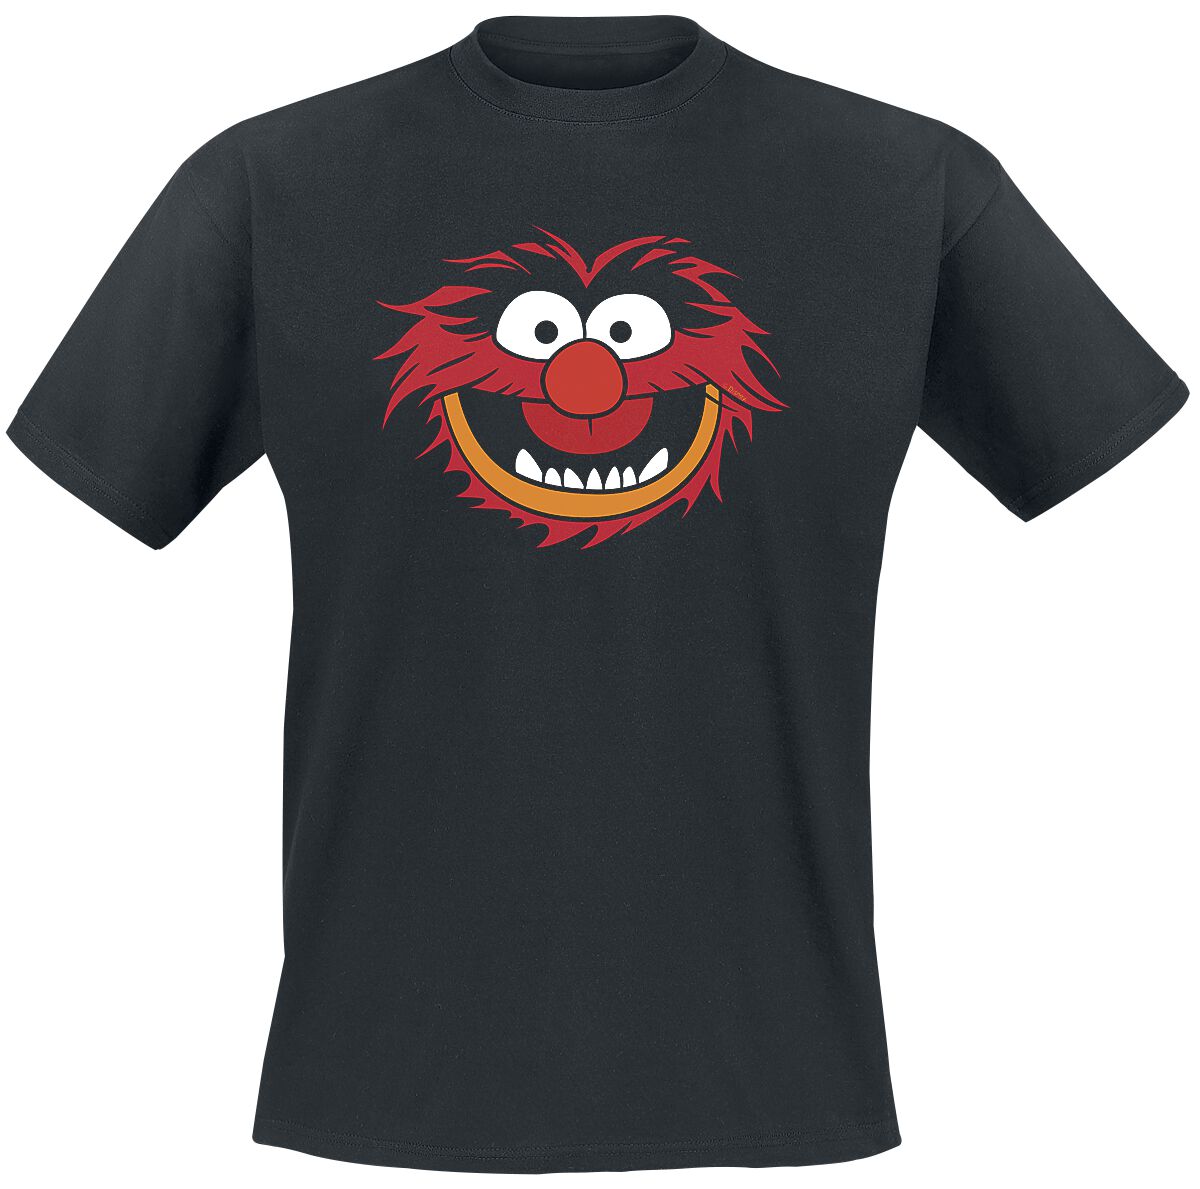 Die Muppets T-Shirt - Animal - Gesicht - S bis XXL - für Männer - Größe XL - schwarz  - Lizenzierter Fanartikel